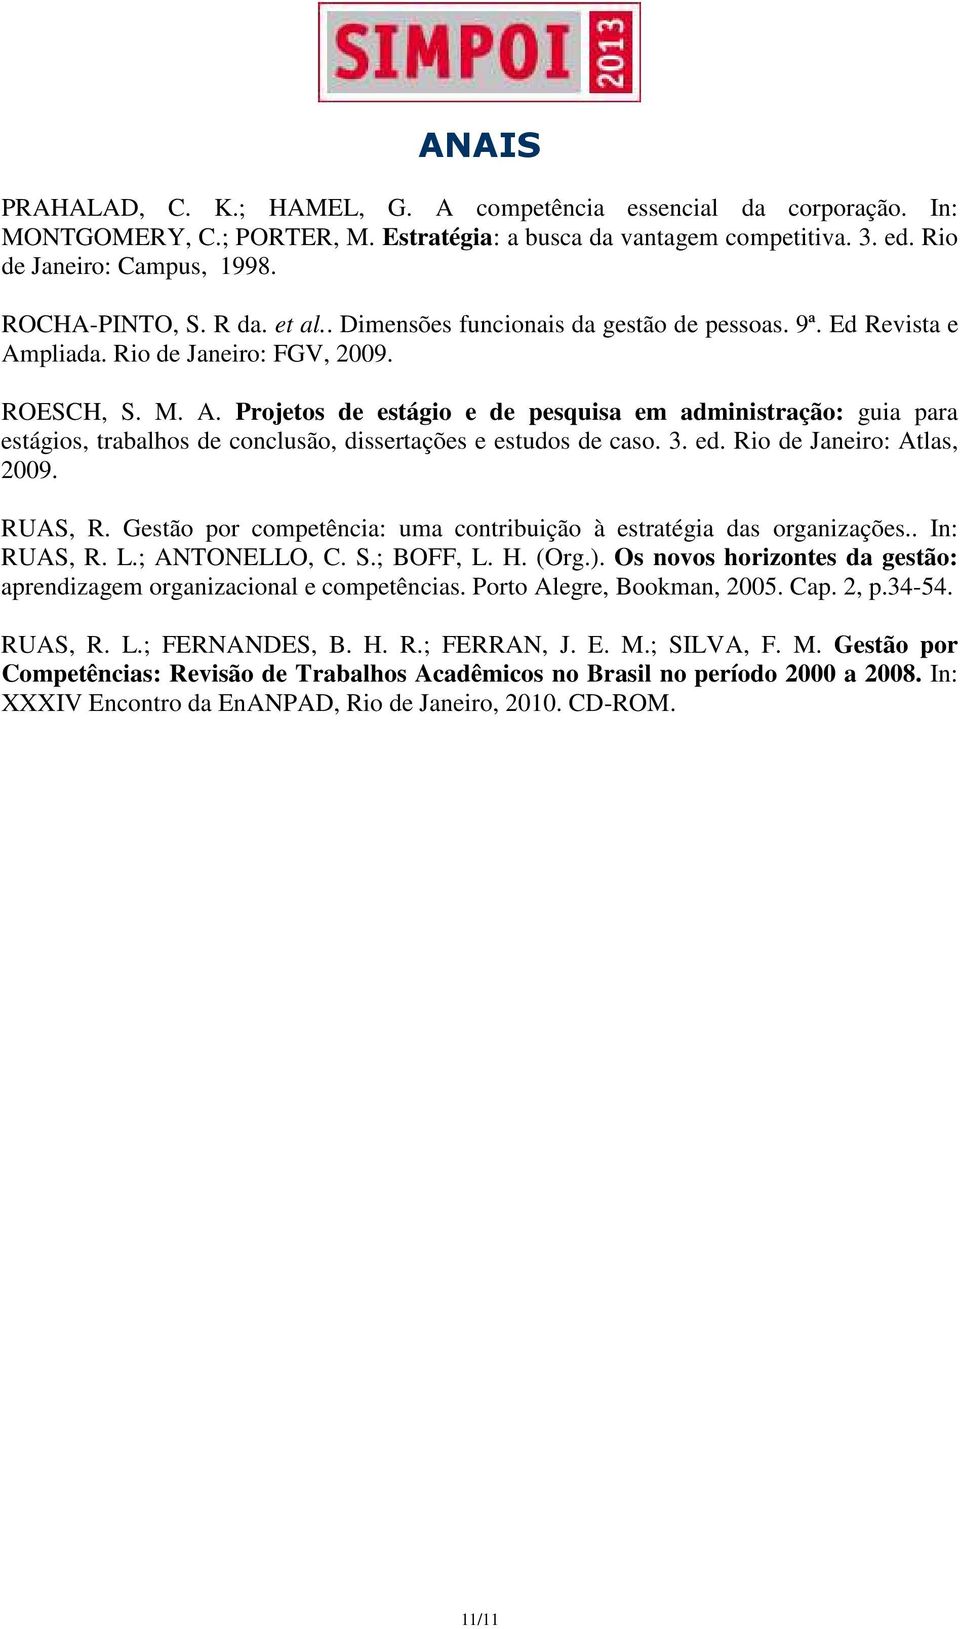 3. ed. Rio de Janeiro: Atlas, 2009. RUAS, R. Gestão por competência: uma contribuição à estratégia das organizações.. In: RUAS, R. L.; ANTONELLO, C. S.; BOFF, L. H. (Org.).